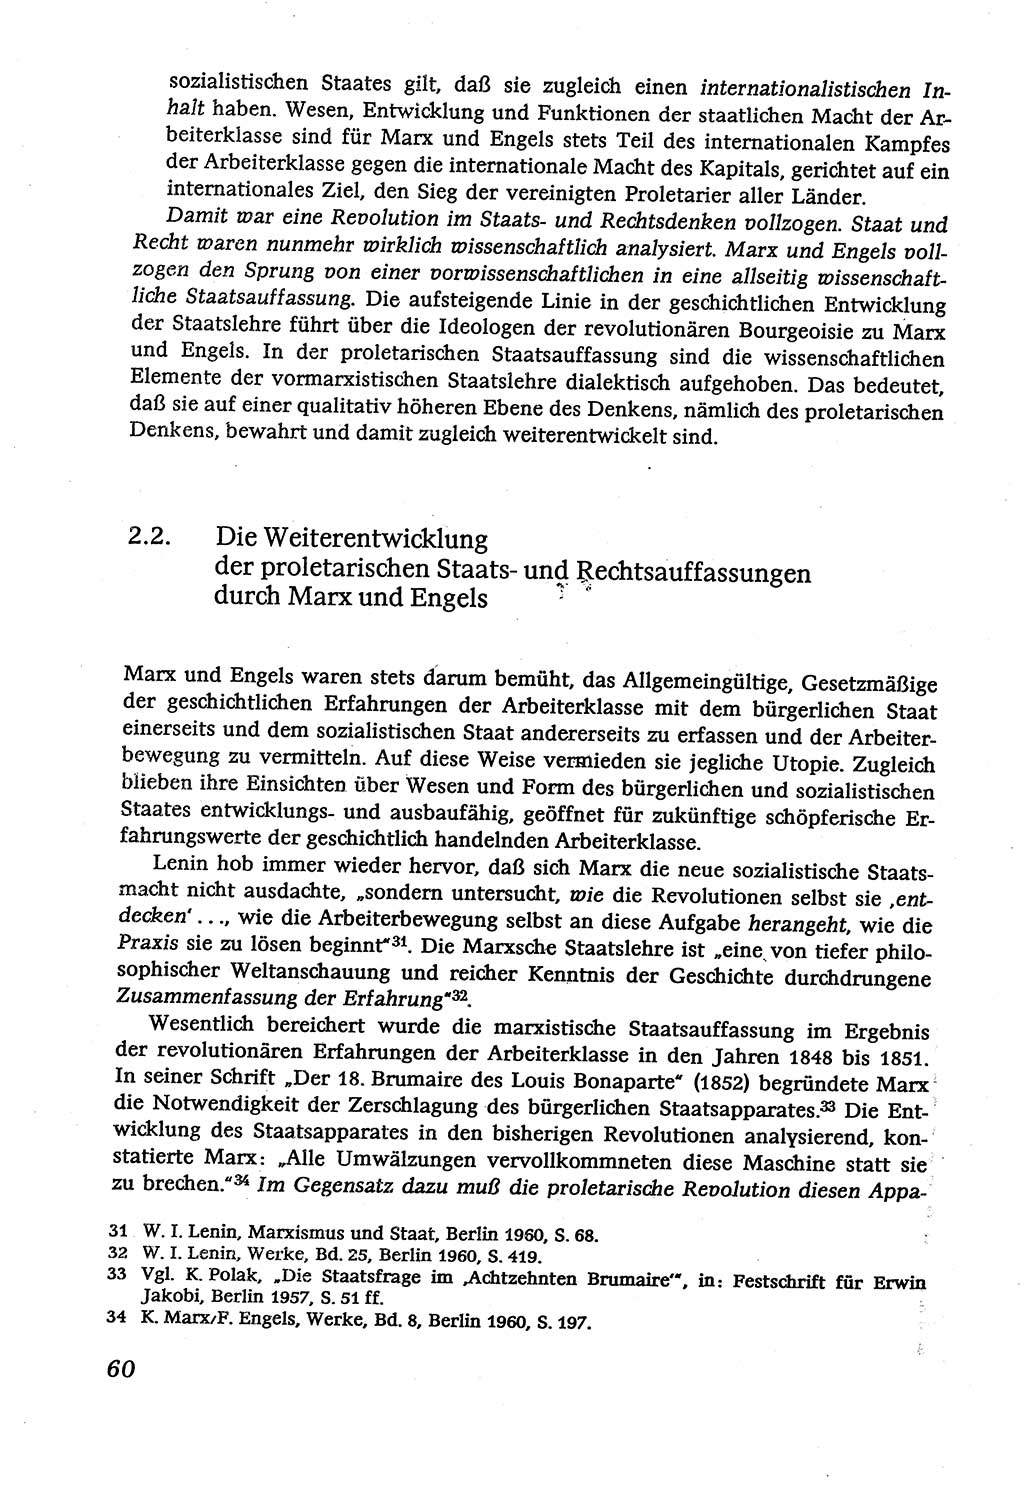 Marxistisch-leninistische (ML) Staats- und Rechtstheorie [Deutsche Demokratische Republik (DDR)], Lehrbuch 1980, Seite 60 (ML St.-R.-Th. DDR Lb. 1980, S. 60)